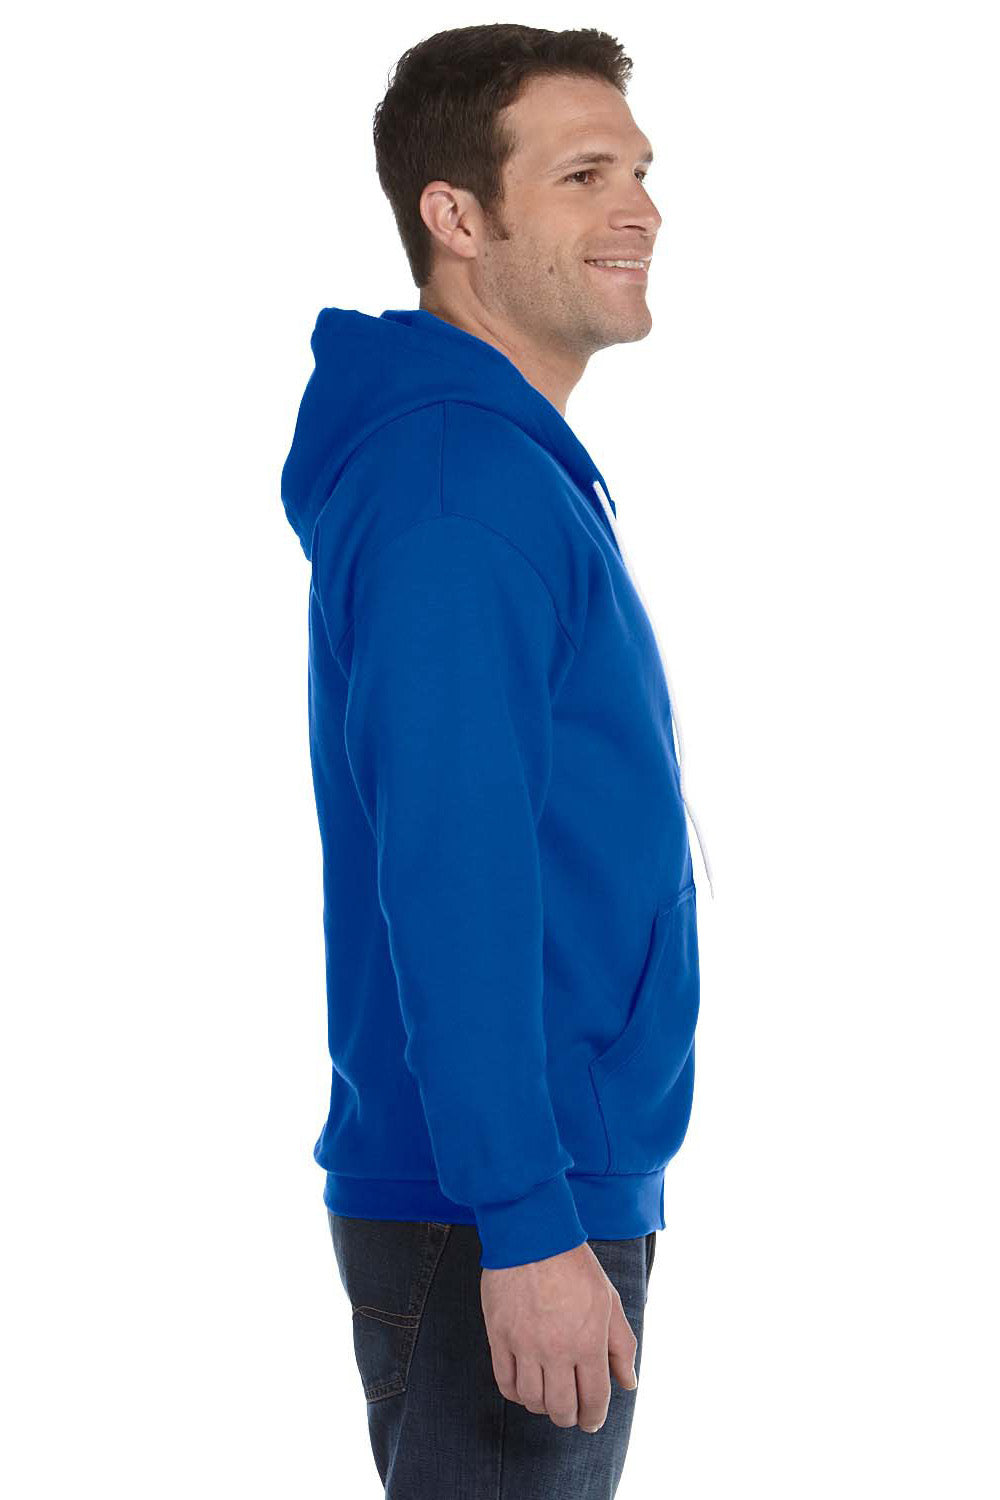 Anvil 71600 Mens Fleece Full Zip Hooded Sweatshirt Hoodie Royal Blue Side